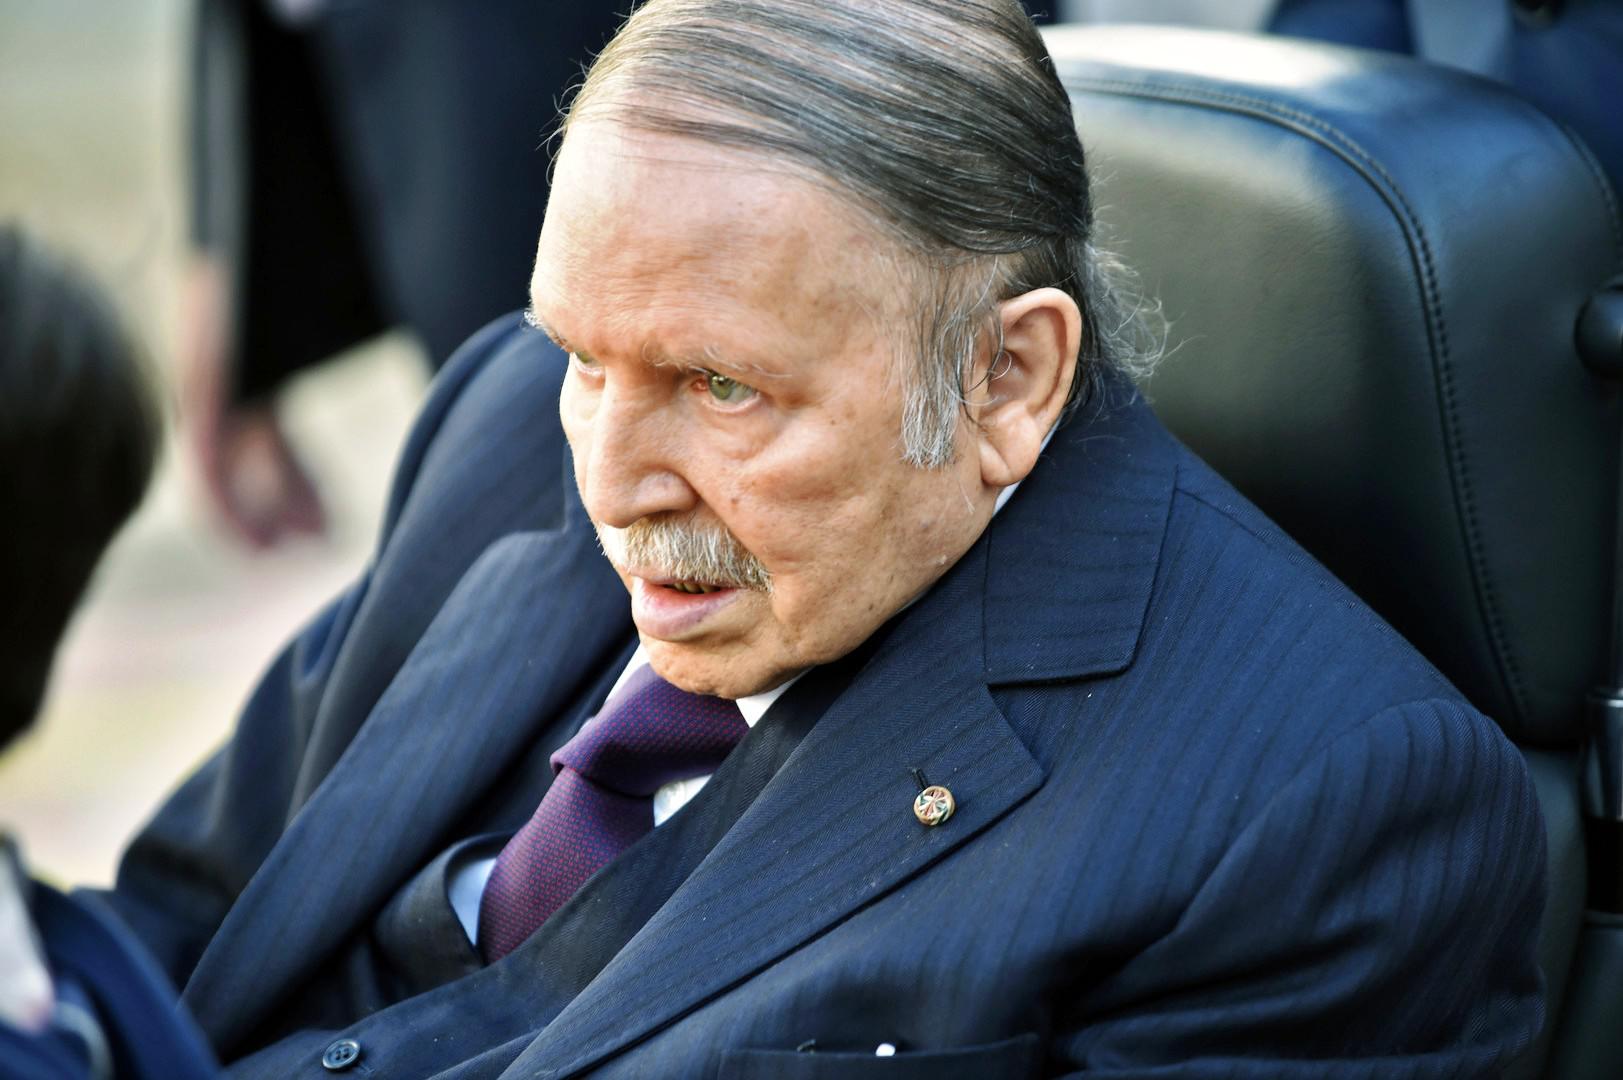 الرئيس الجزائري عبدالعزيز بوتفليقة على كرسيه المتحرك